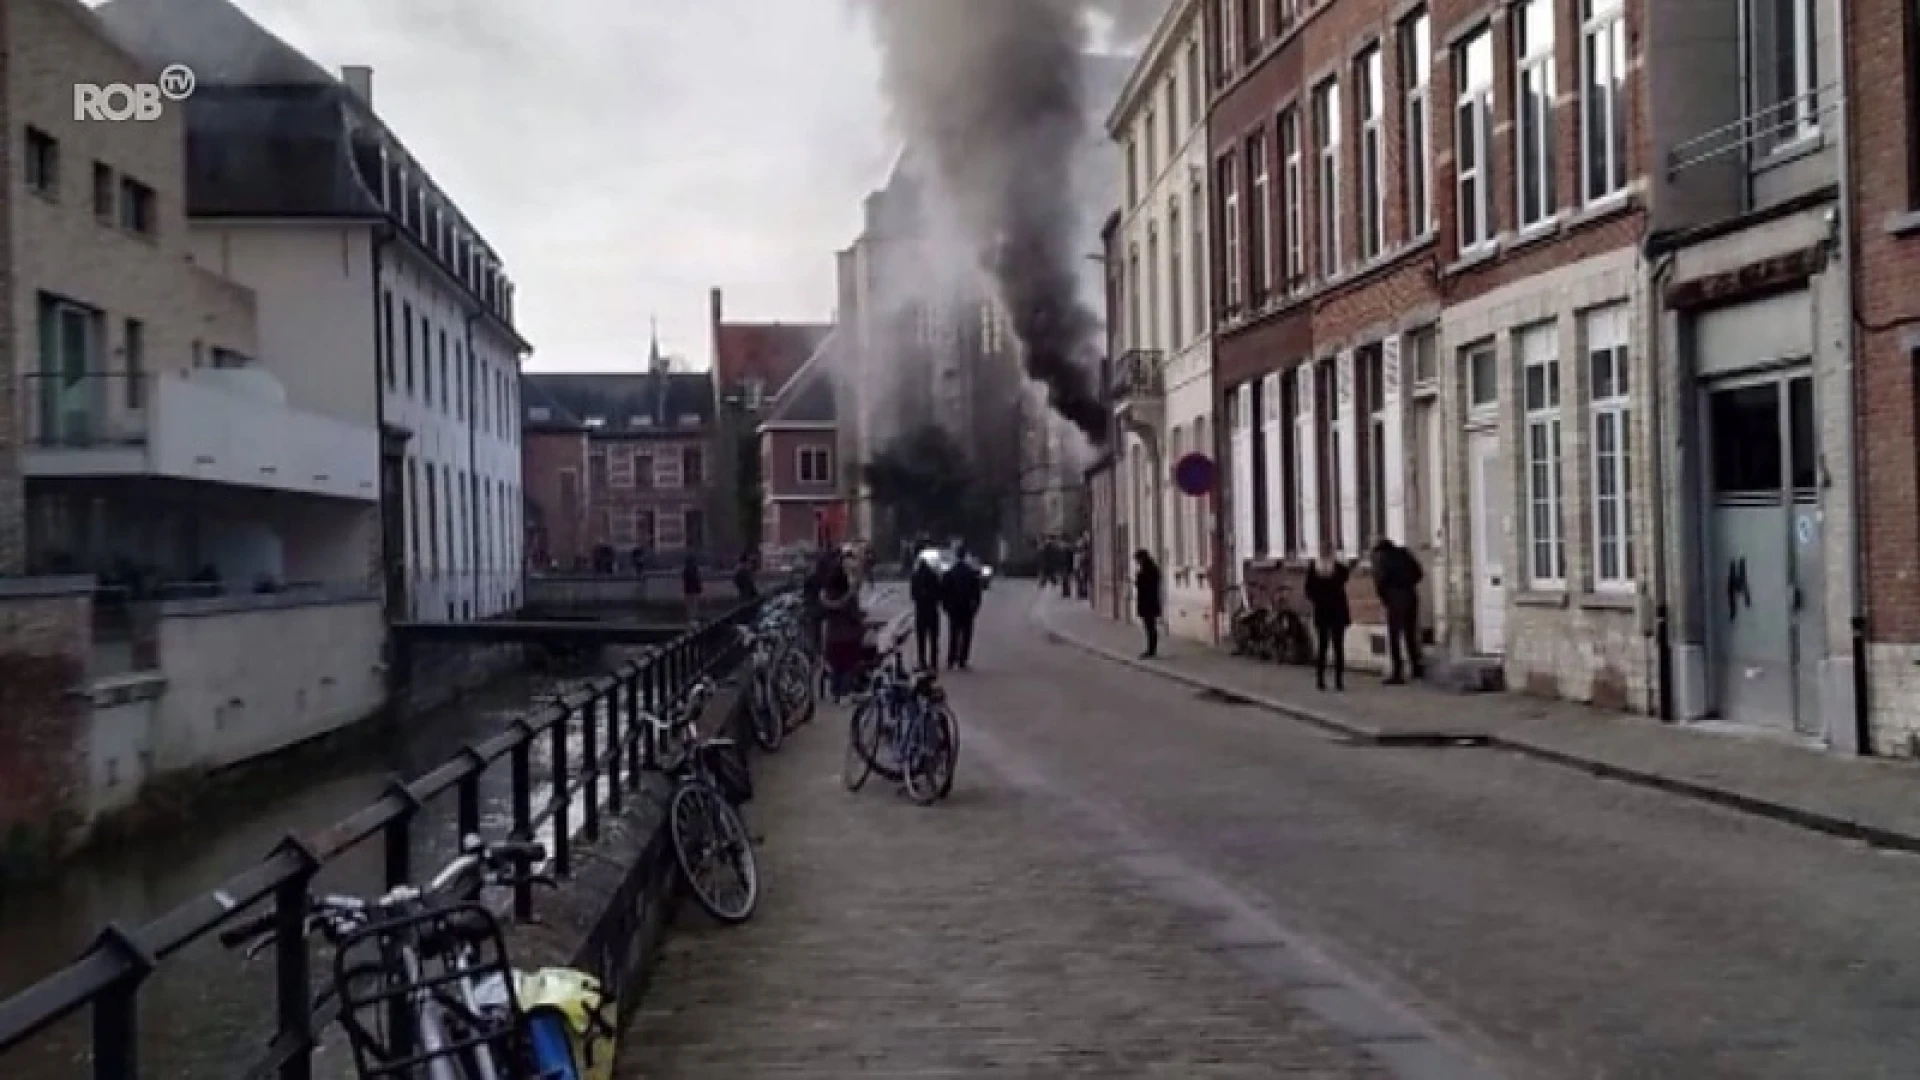 Bovenverdieping huis in Leuven vernield na brand door haardroger